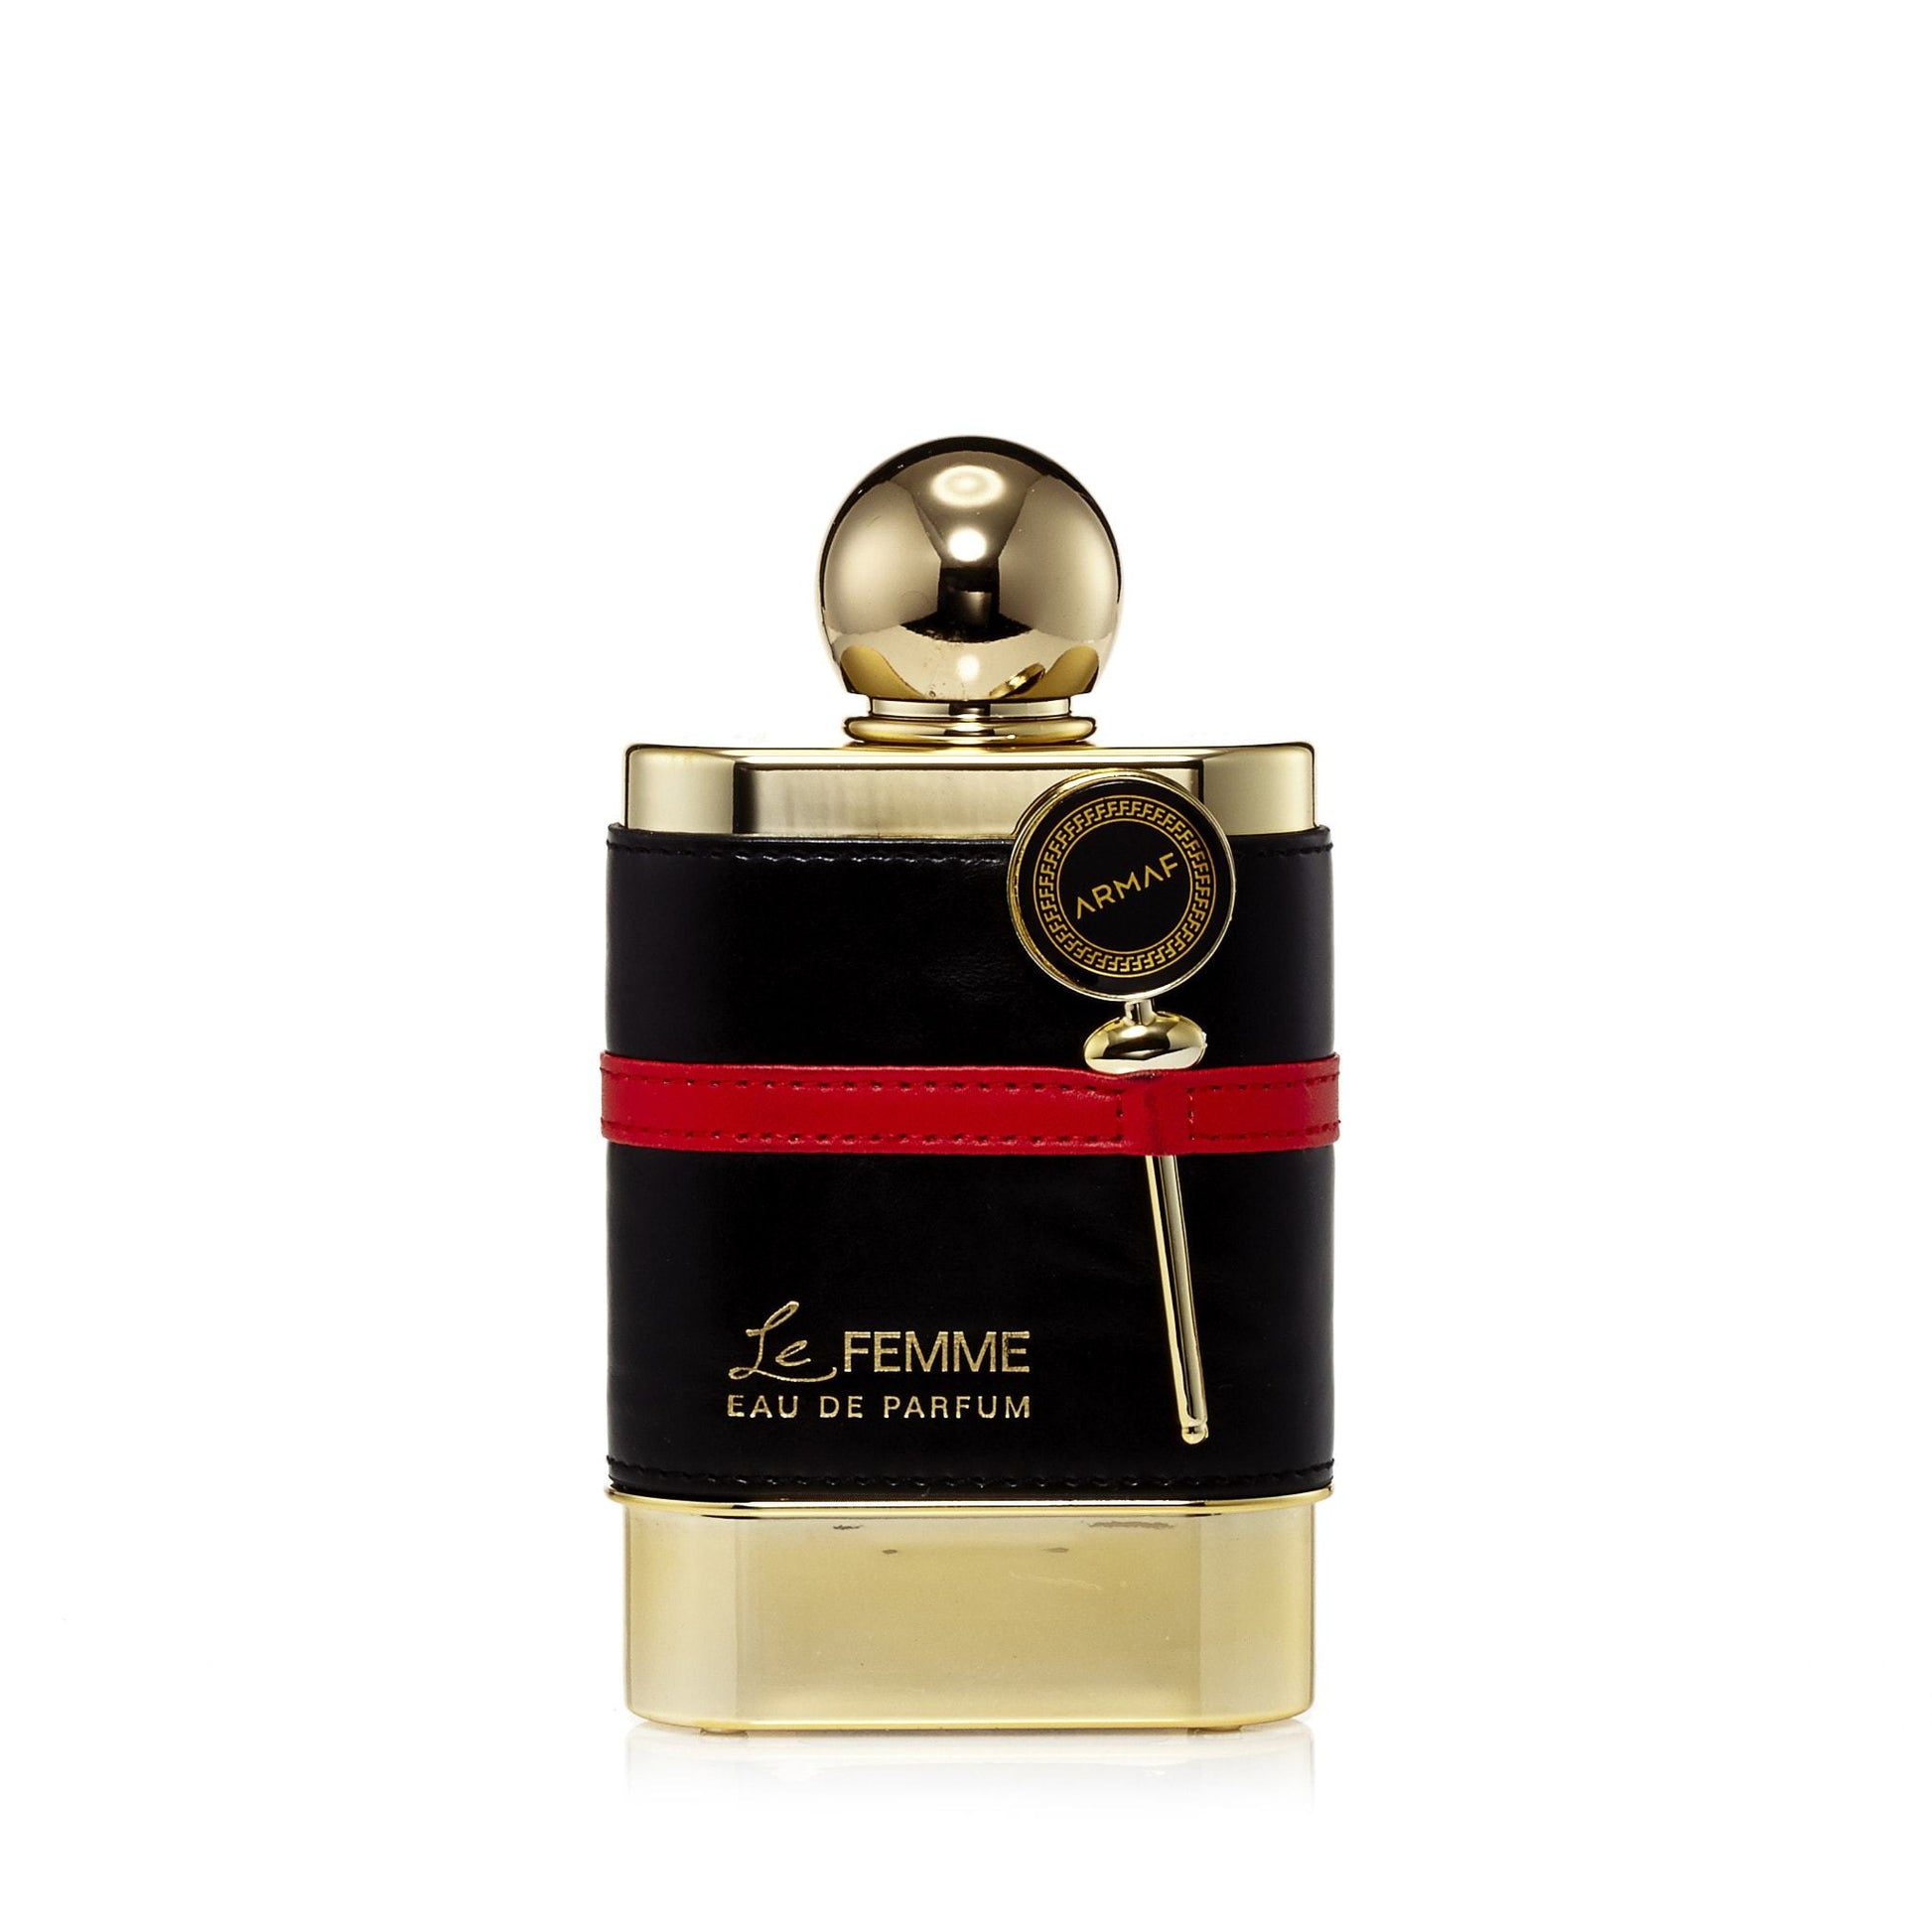 Le Femme Eau de Parfum Spray for Women, Product image 1